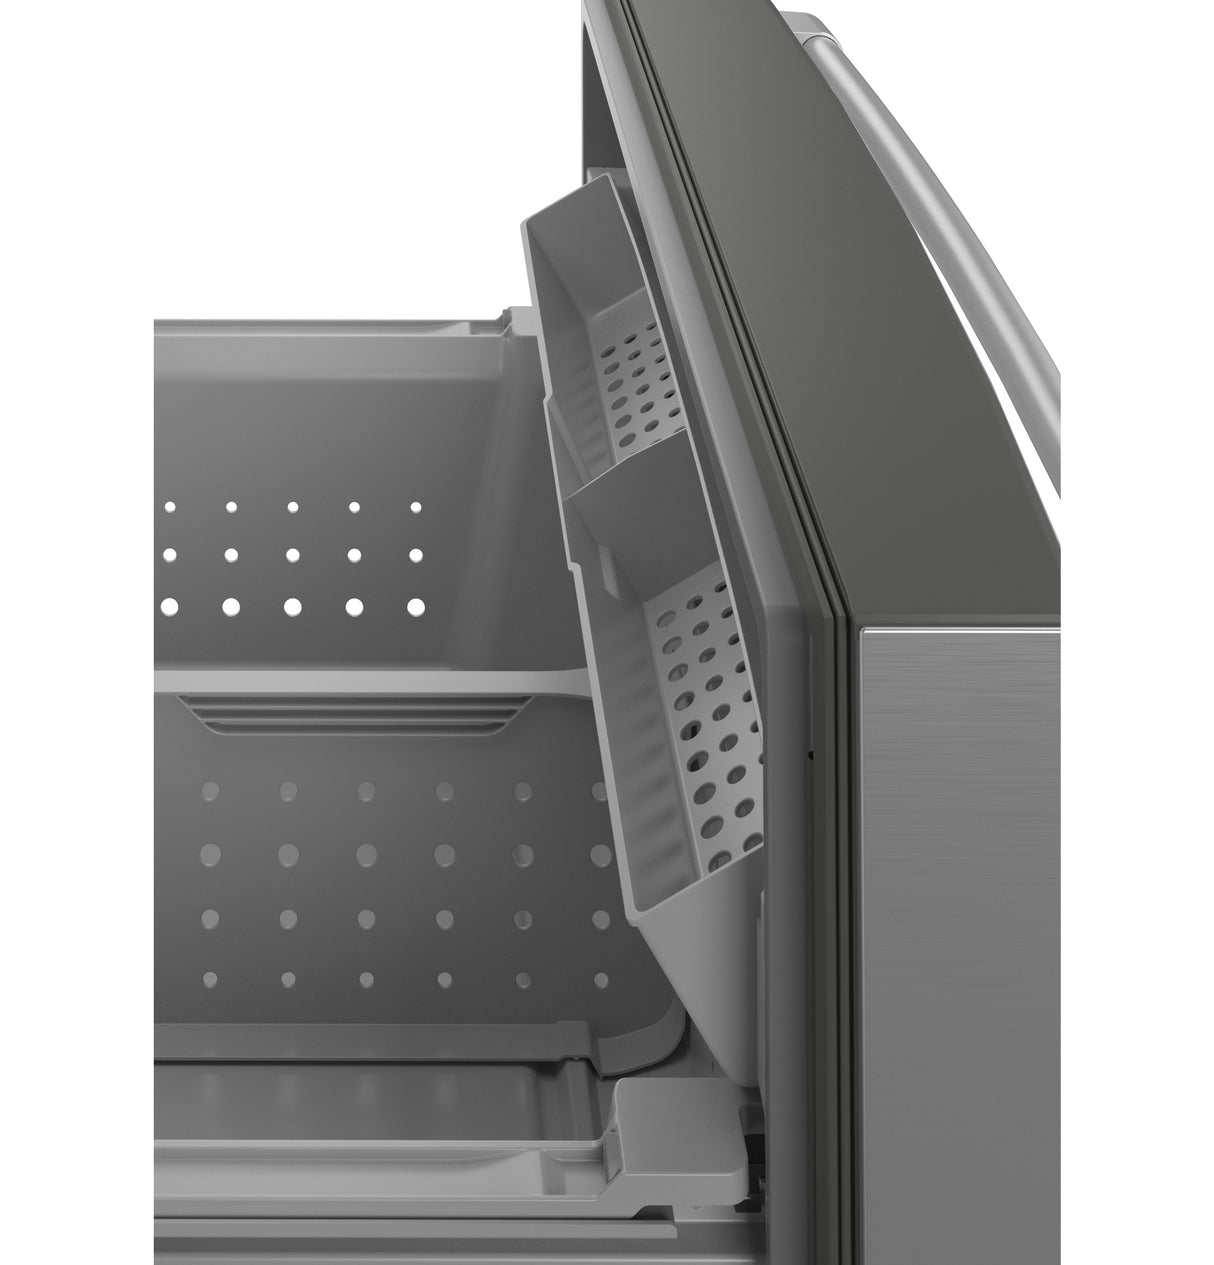 Caf(eback)(TM) ENERGY STAR(R) 27.8 Cu. Ft. Smart 4-Door French-Door Refrigerator - (CVE28DP3ND1)